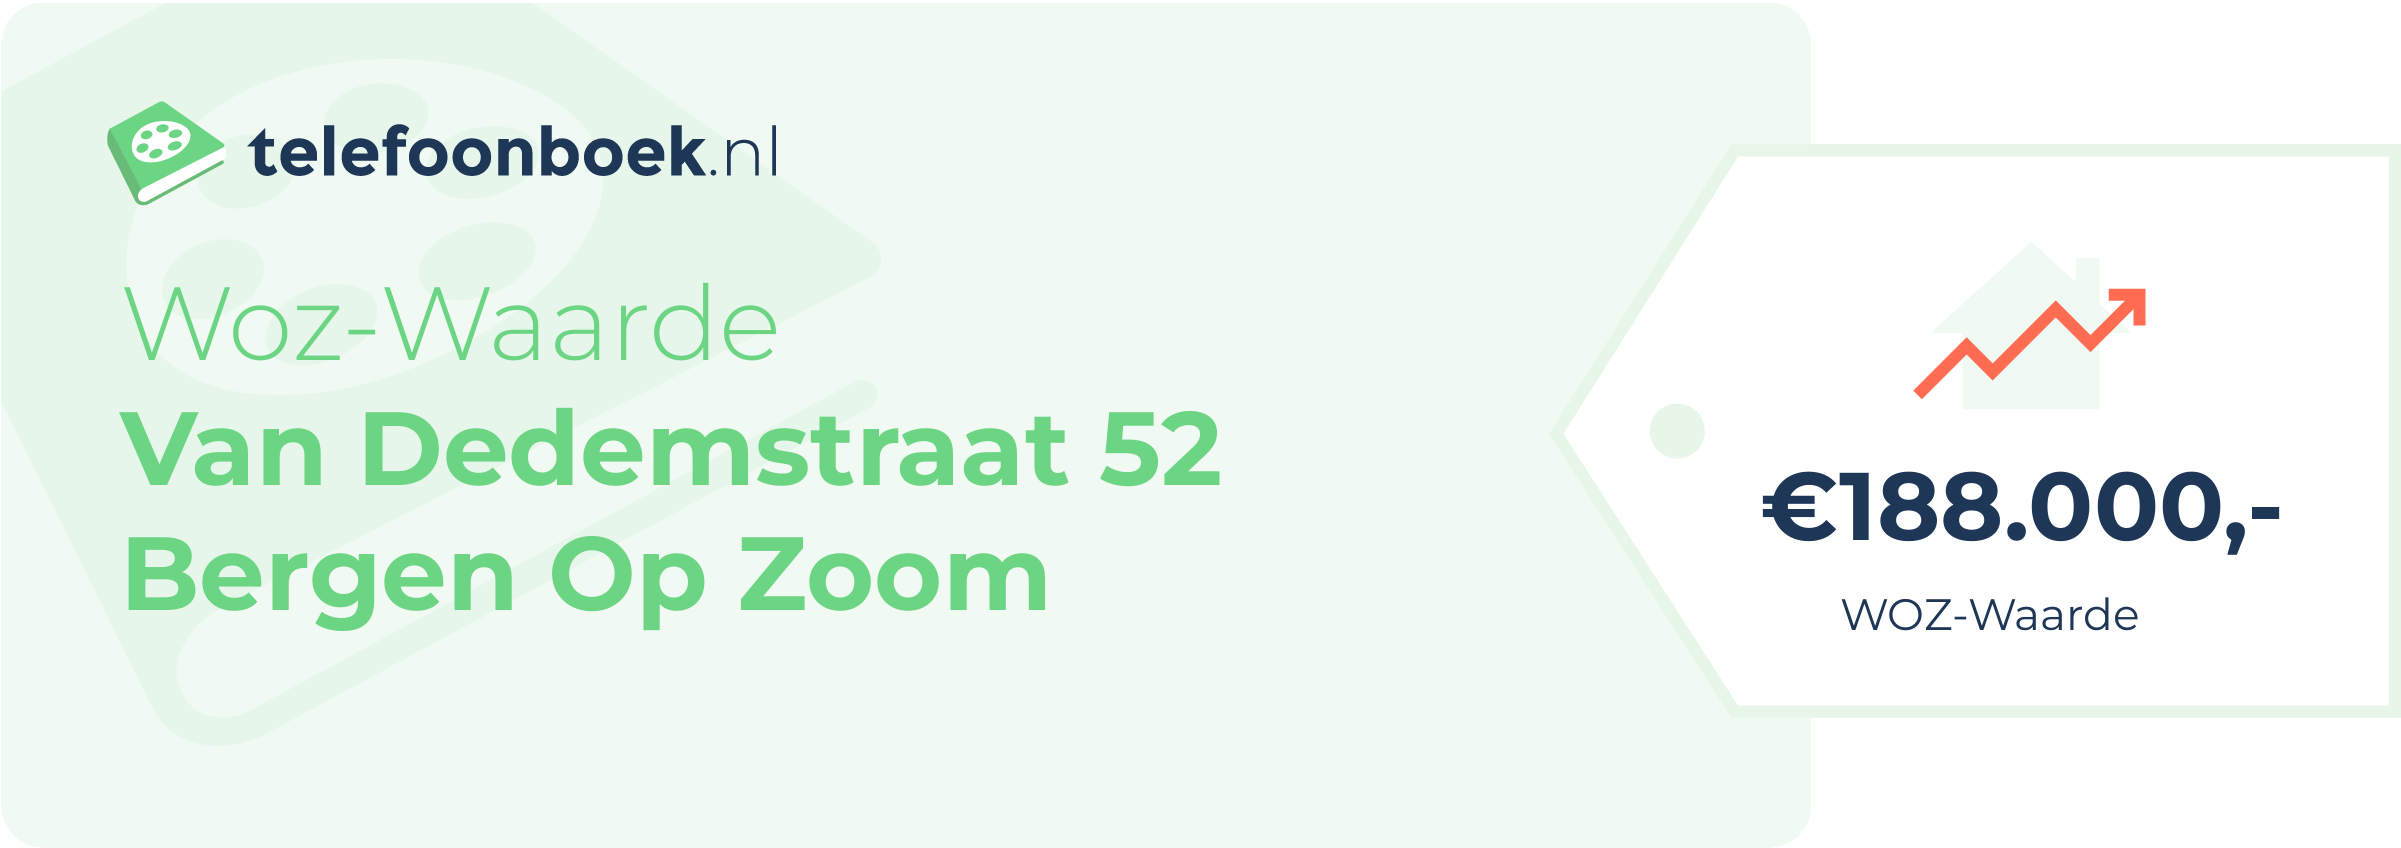 WOZ-waarde Van Dedemstraat 52 Bergen Op Zoom